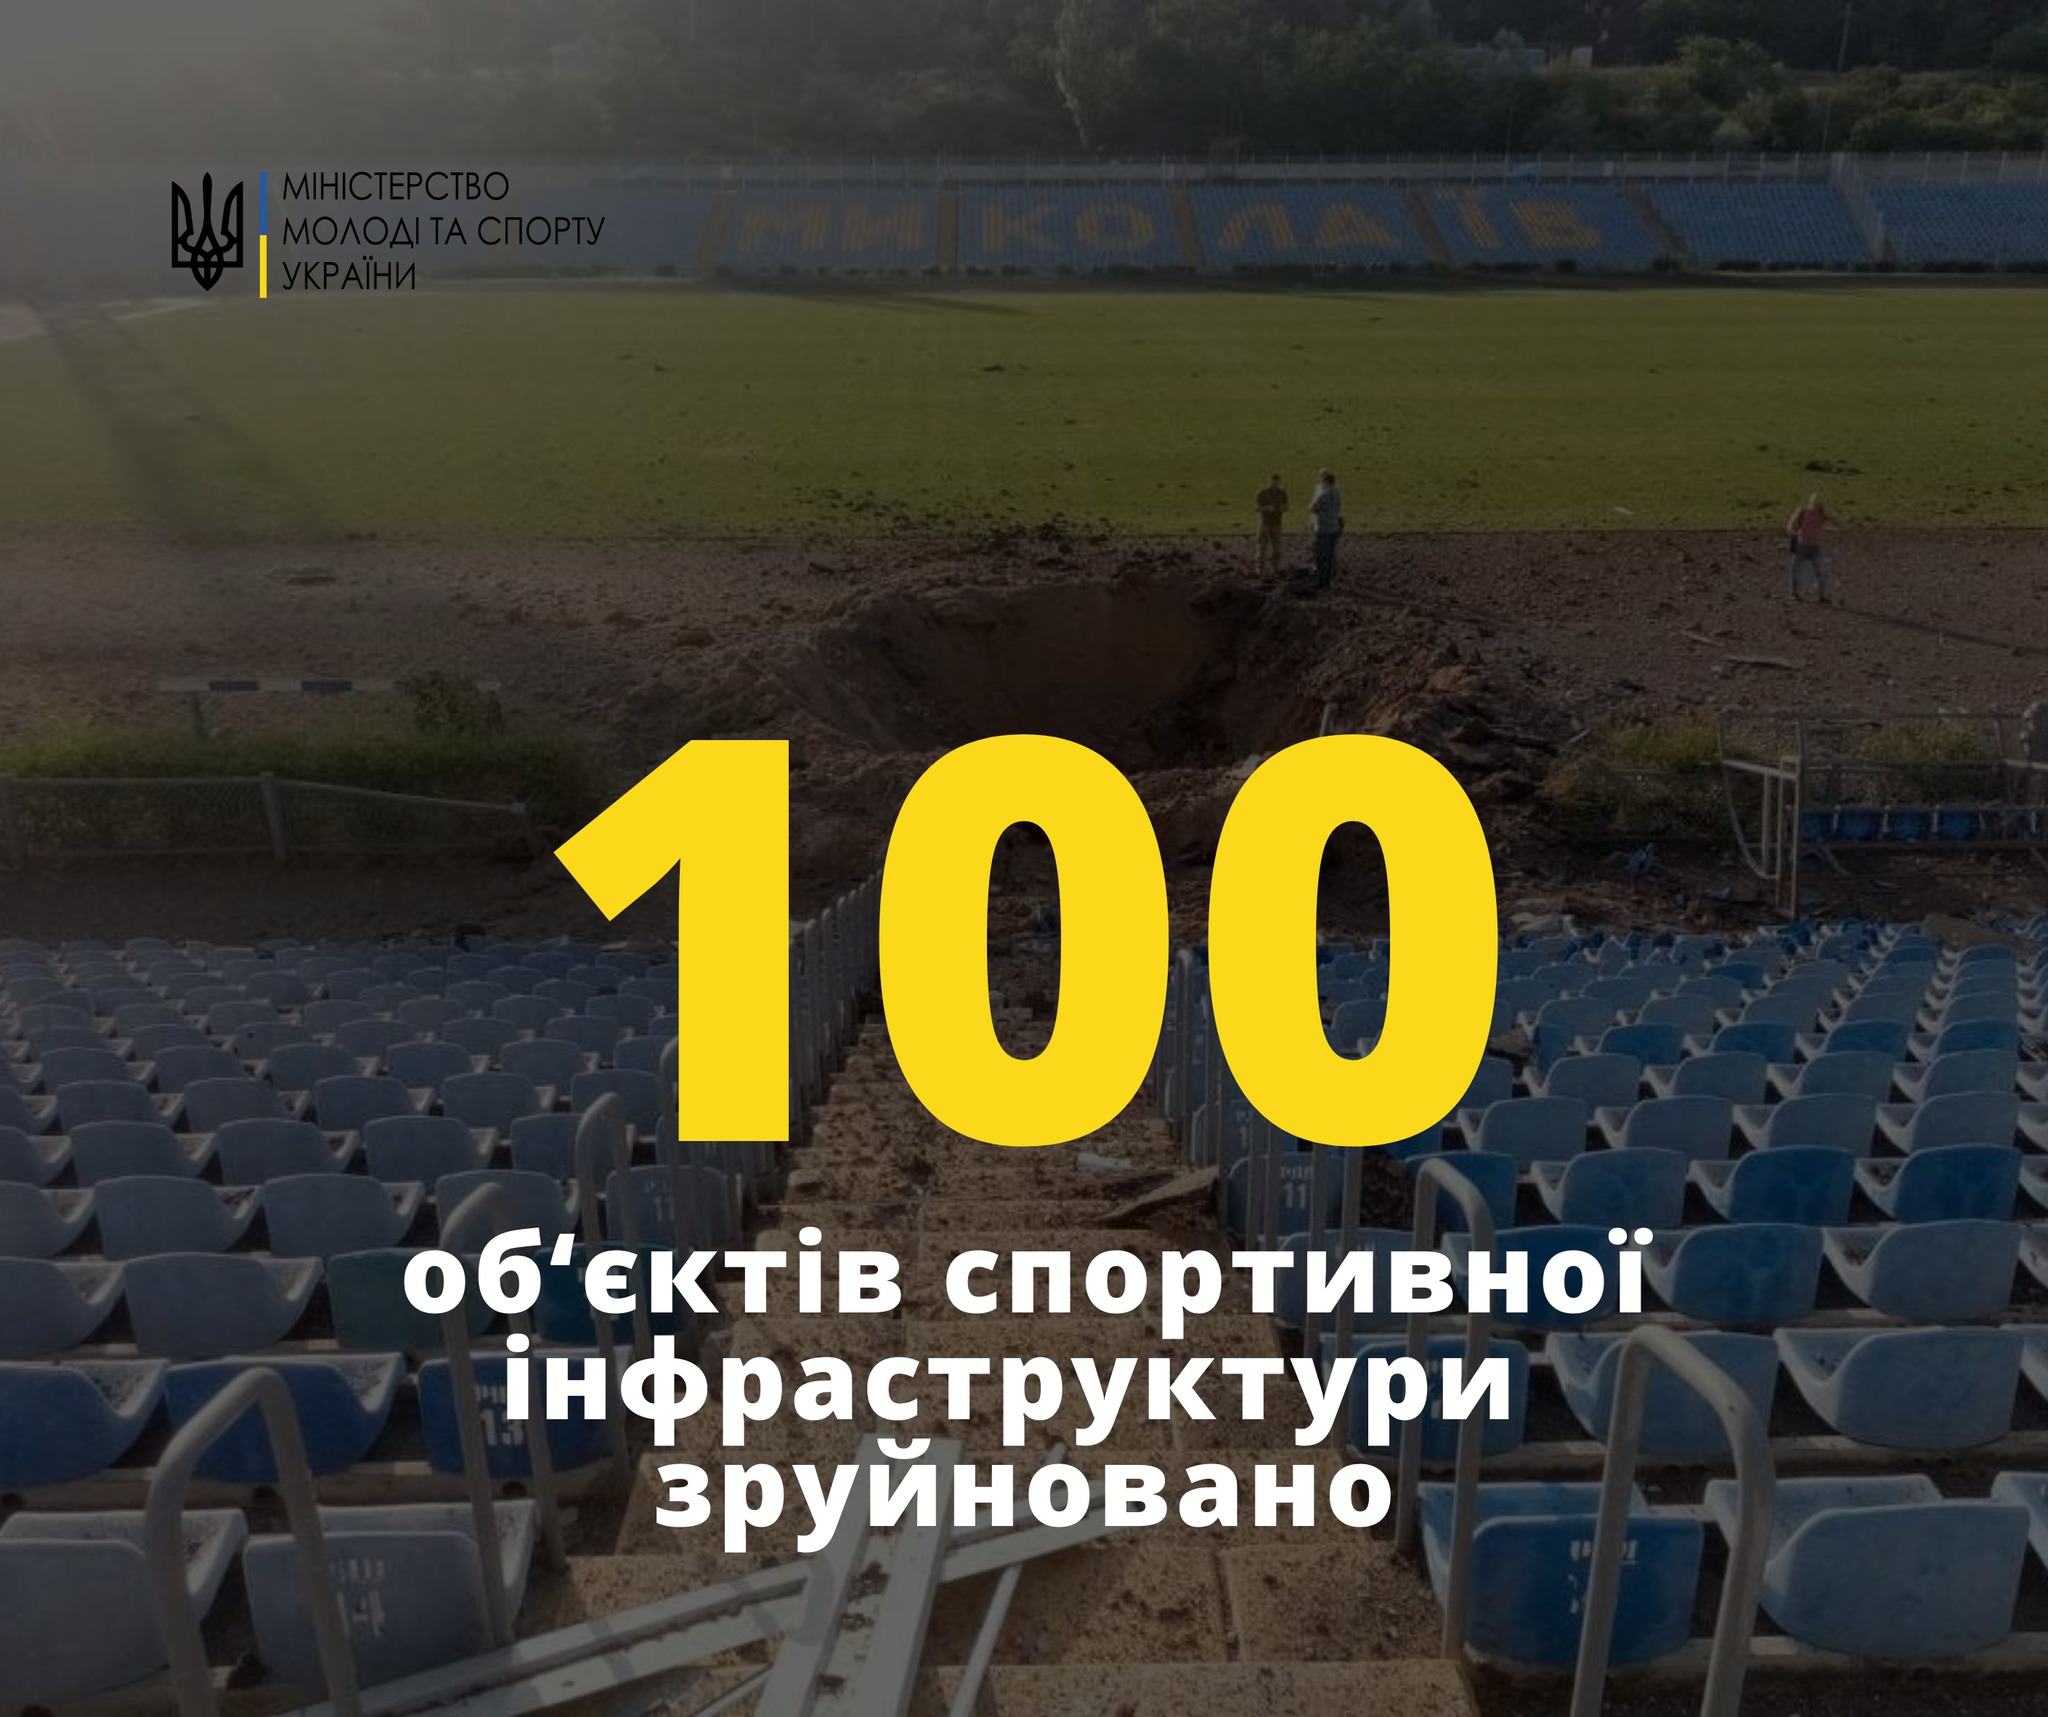 Стадіон в Миколаєві став сотим спортивним об’єктом, який російські окупанти зруйнували від початку вторгнення 3